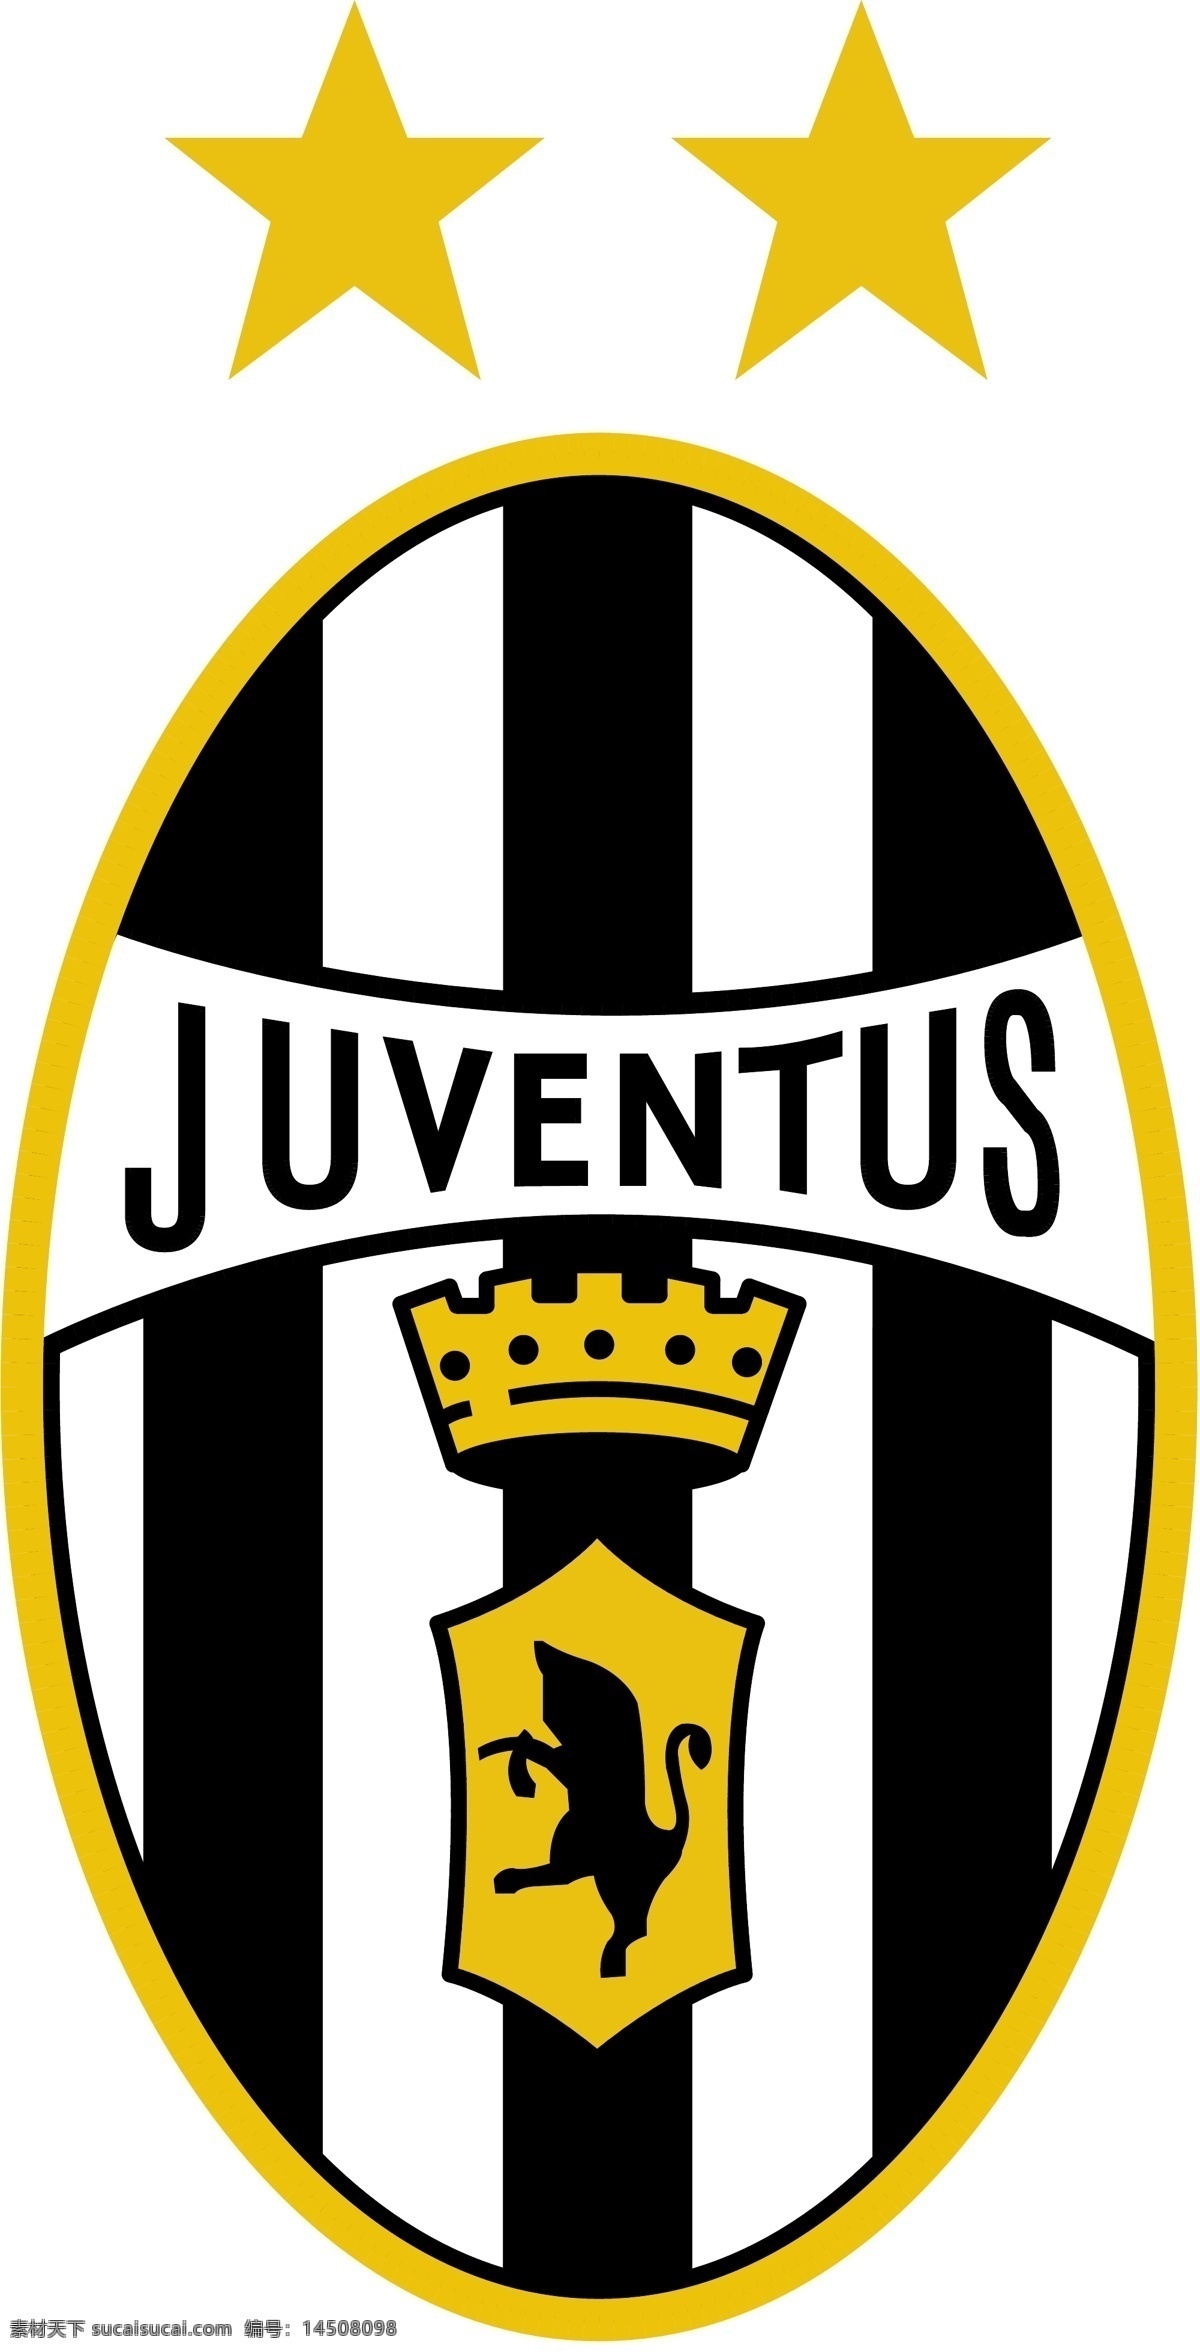 尤文图斯 足球 俱乐部 logo大全 商业矢量 矢量下载 juventus 网页矢量 矢量图 其他矢量图